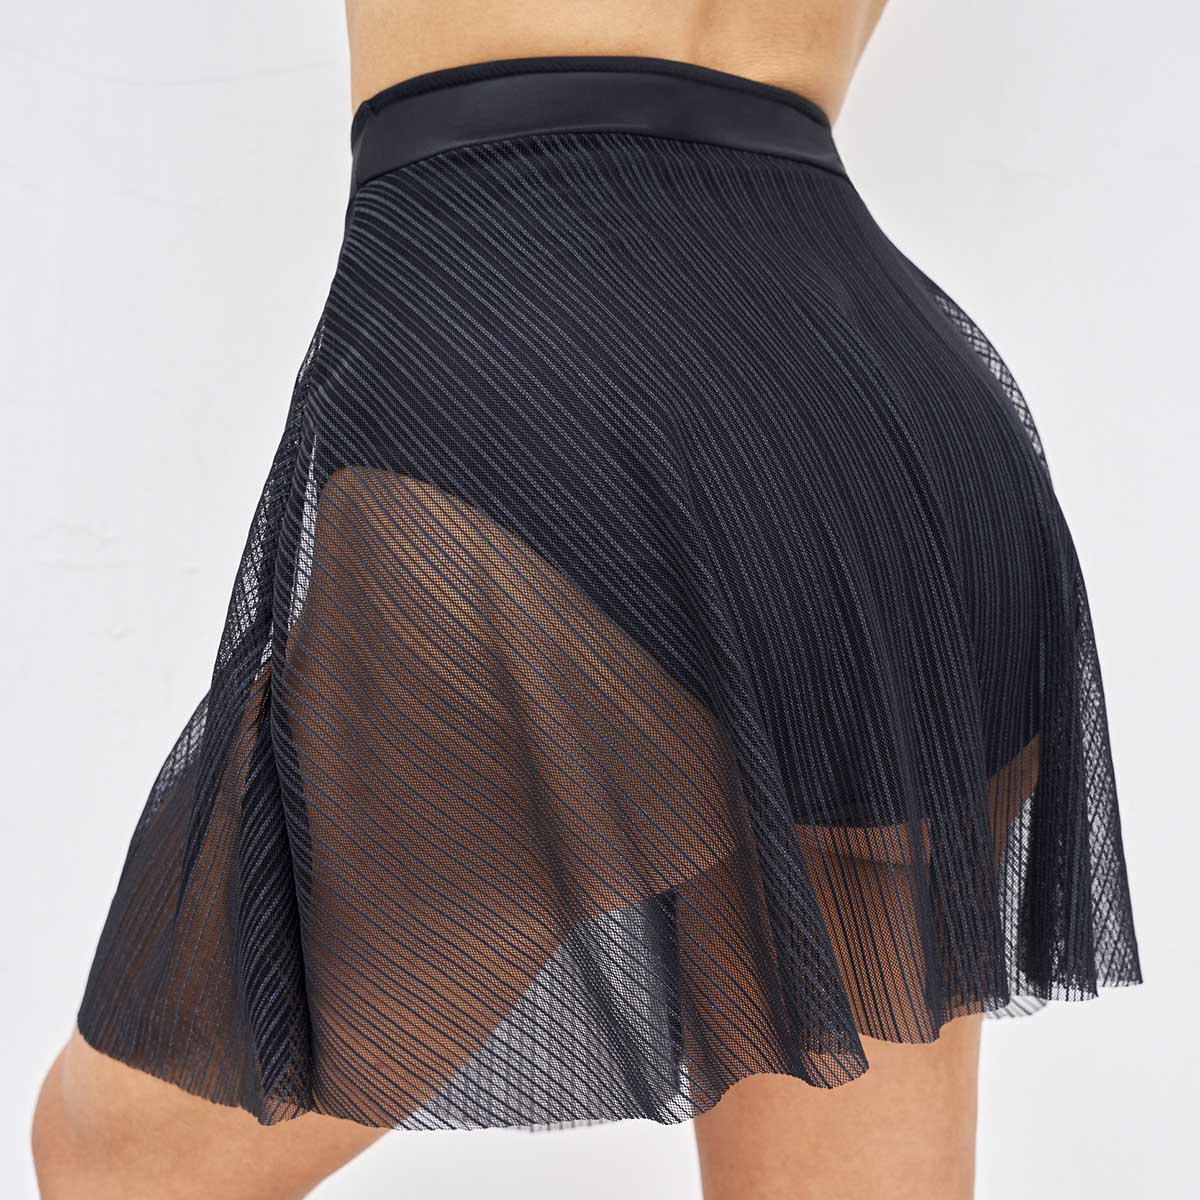 Mesh Stitching High Waisted Black Swim Skirt